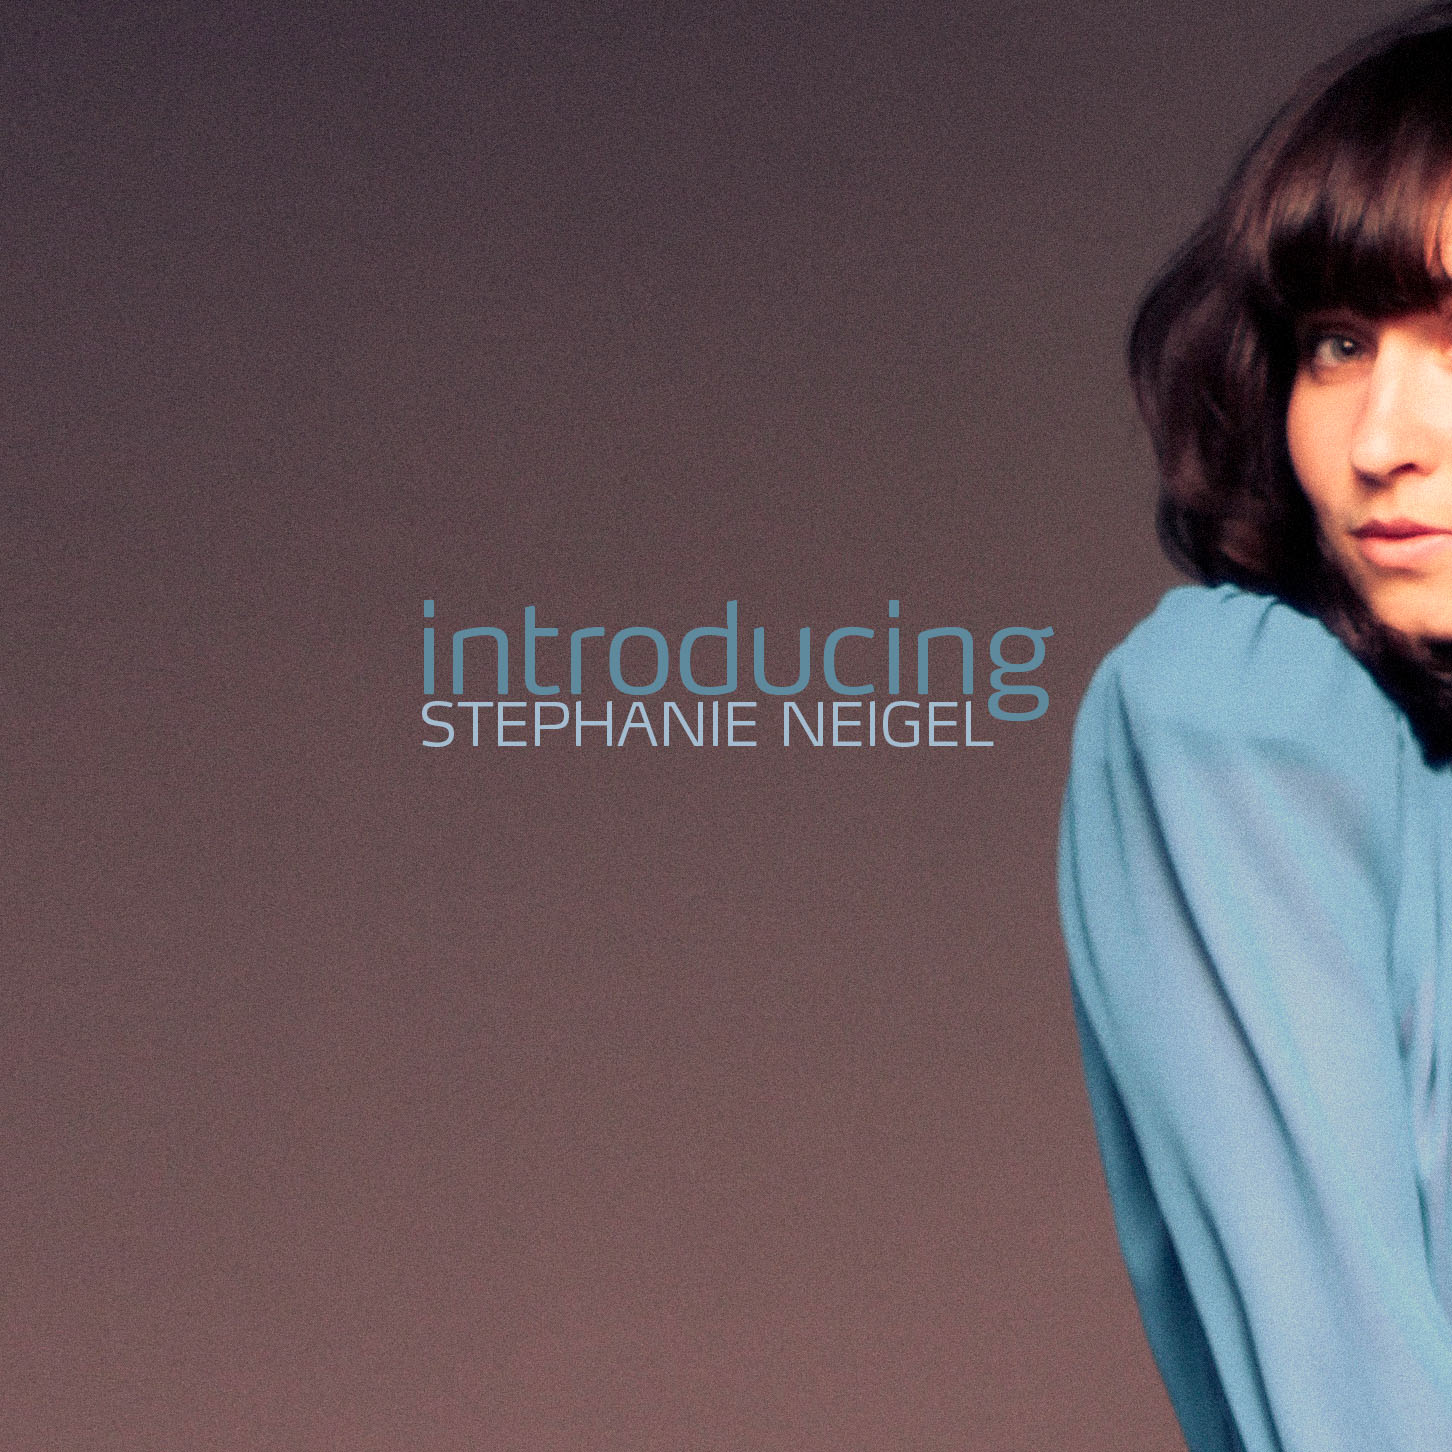 Stephanie Neigel - "Introducing Stephanie Neigel"